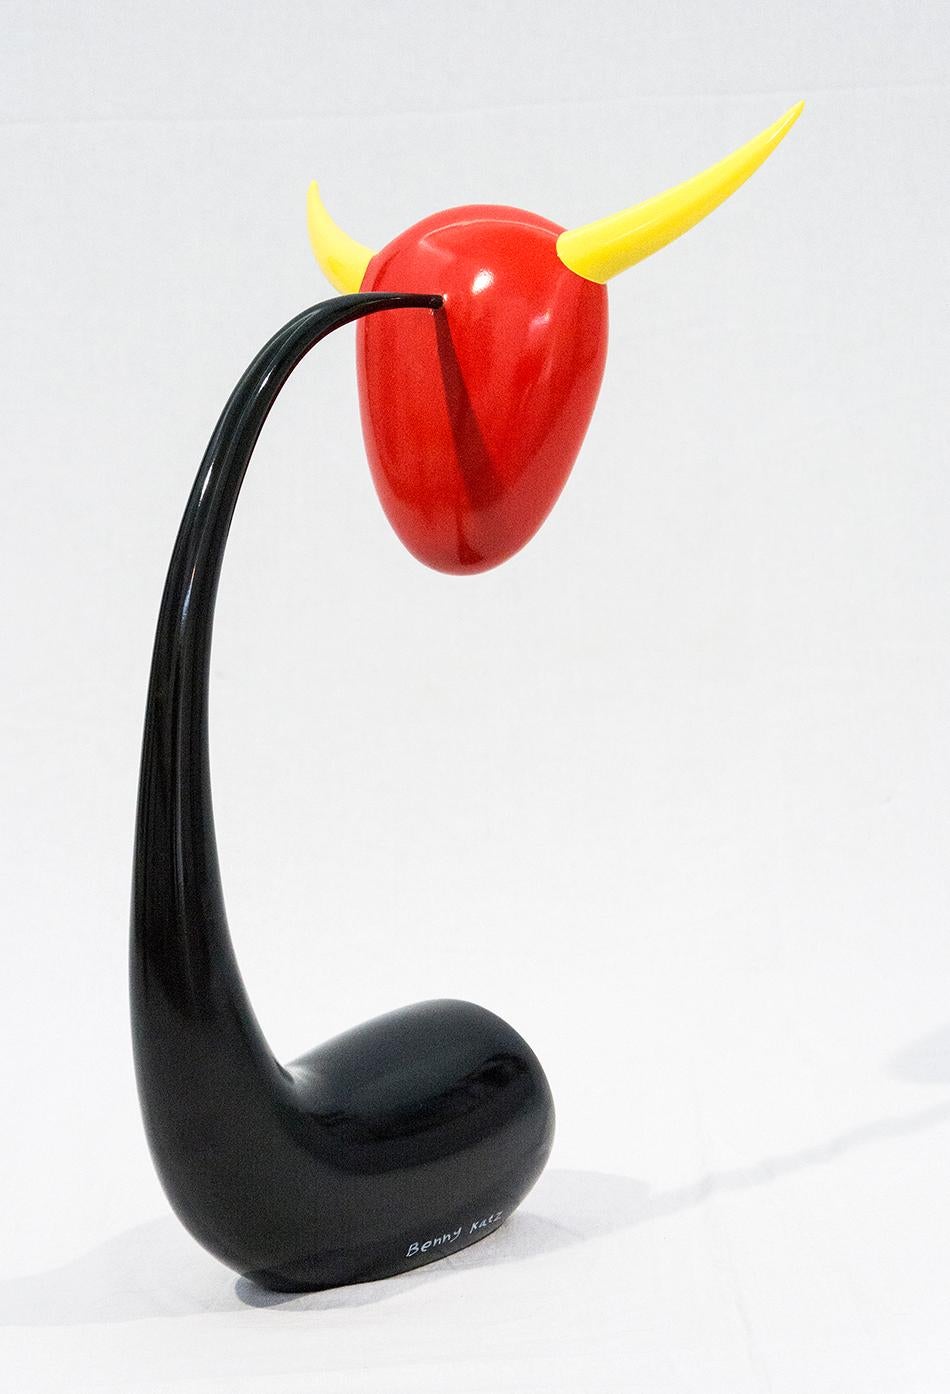 La forme distinctive d'une tête de taureau attachée à un support en forme de corne ressort dans des couleurs brillantes et vives de rouge, jaune et noir dans cette sculpture fantaisiste de Benny Katz. En tant qu'ancien concepteur graphique, Katz